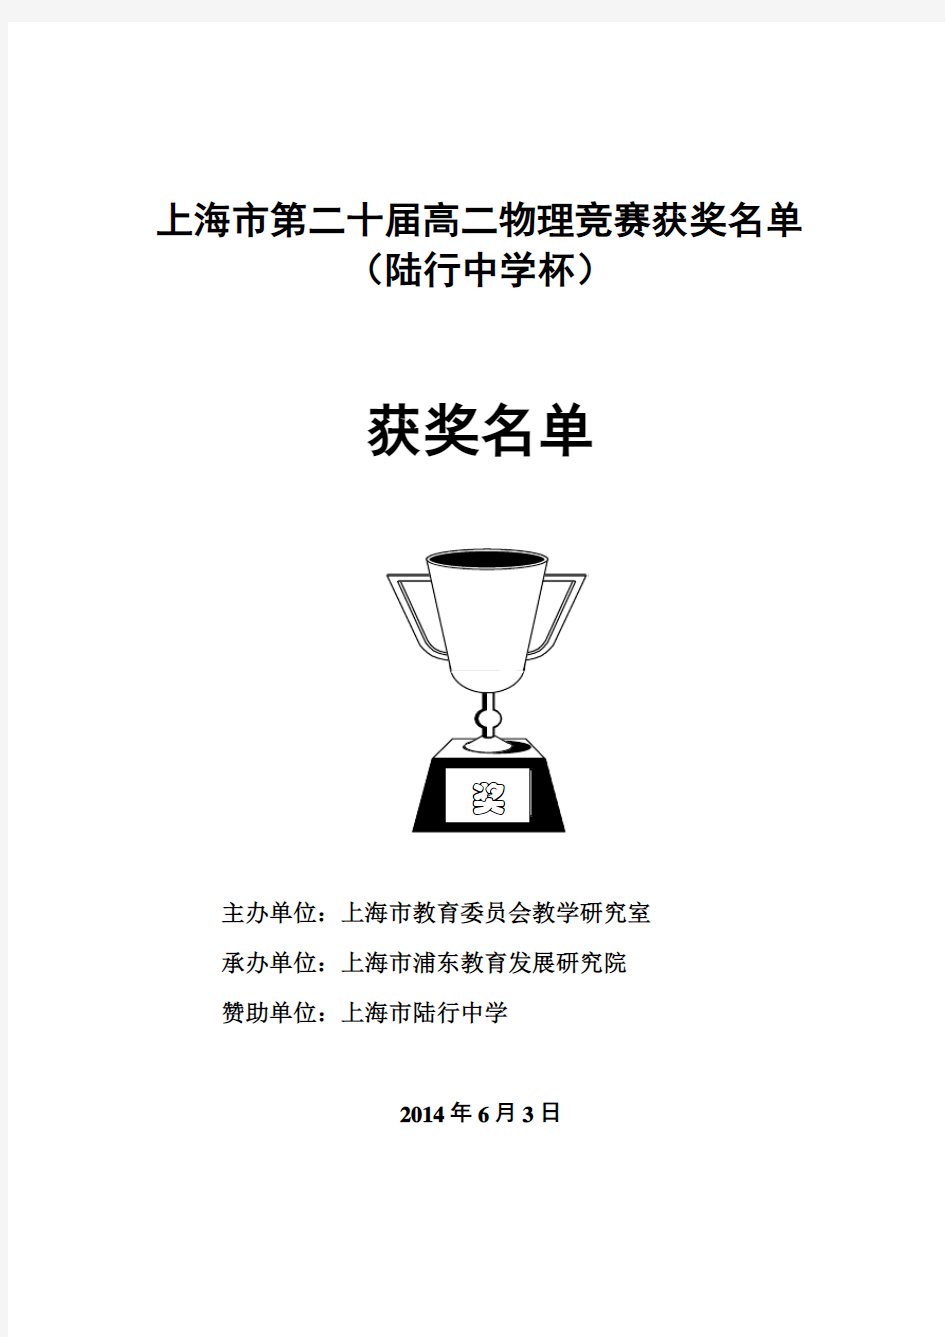 上海市第二十届高二物理竞赛获奖名单2014.6.3